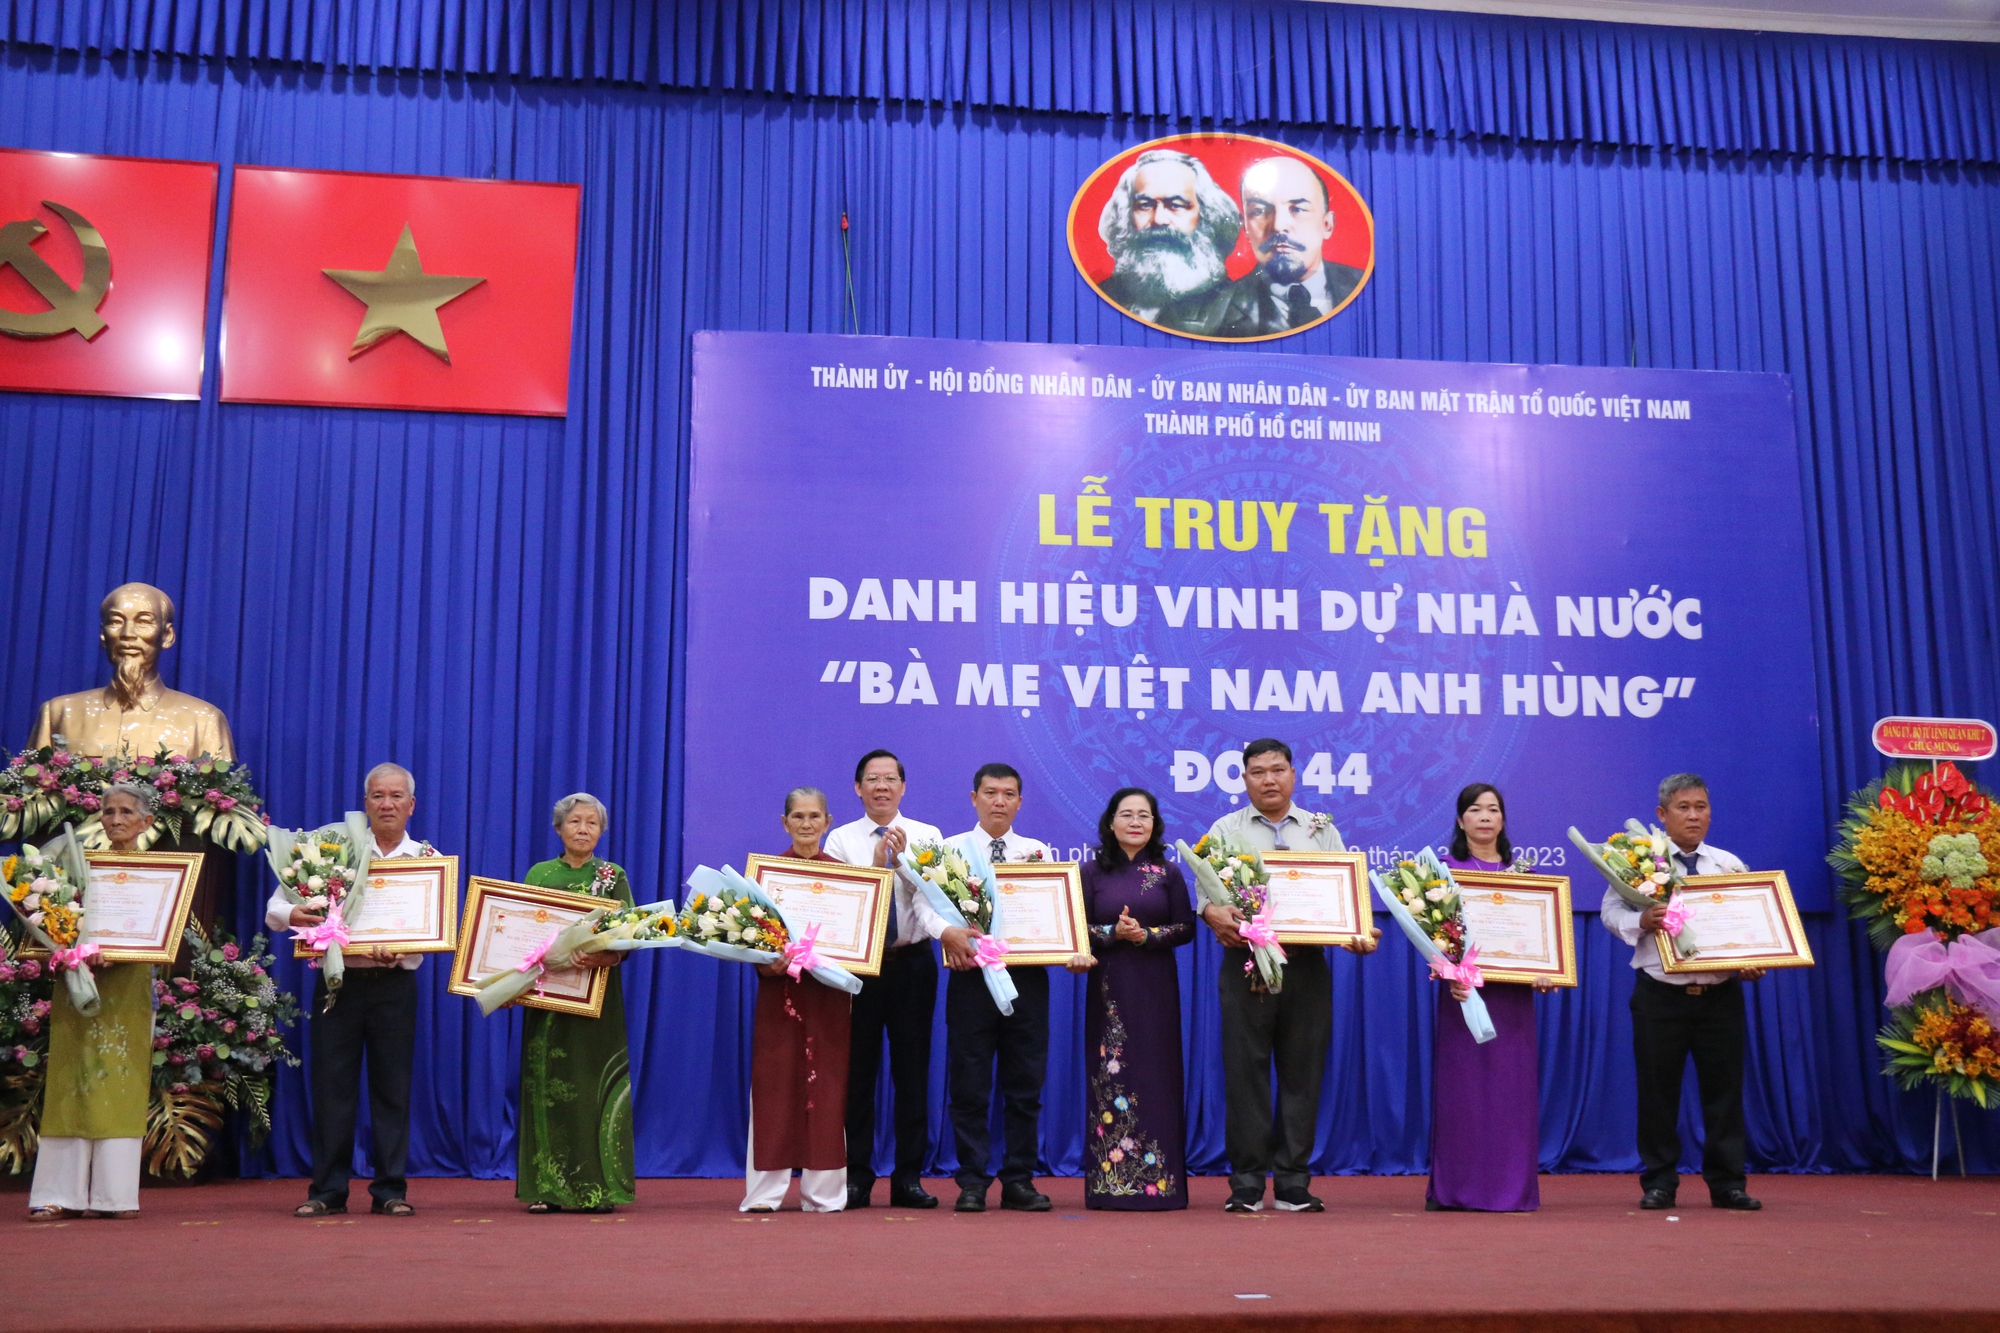 TP.HCM: Truy tặng danh hiệu Bà mẹ Việt Nam anh hùng cho 8 mẹ, nhân ngày Quốc tế Phụ nữ - Ảnh 3.